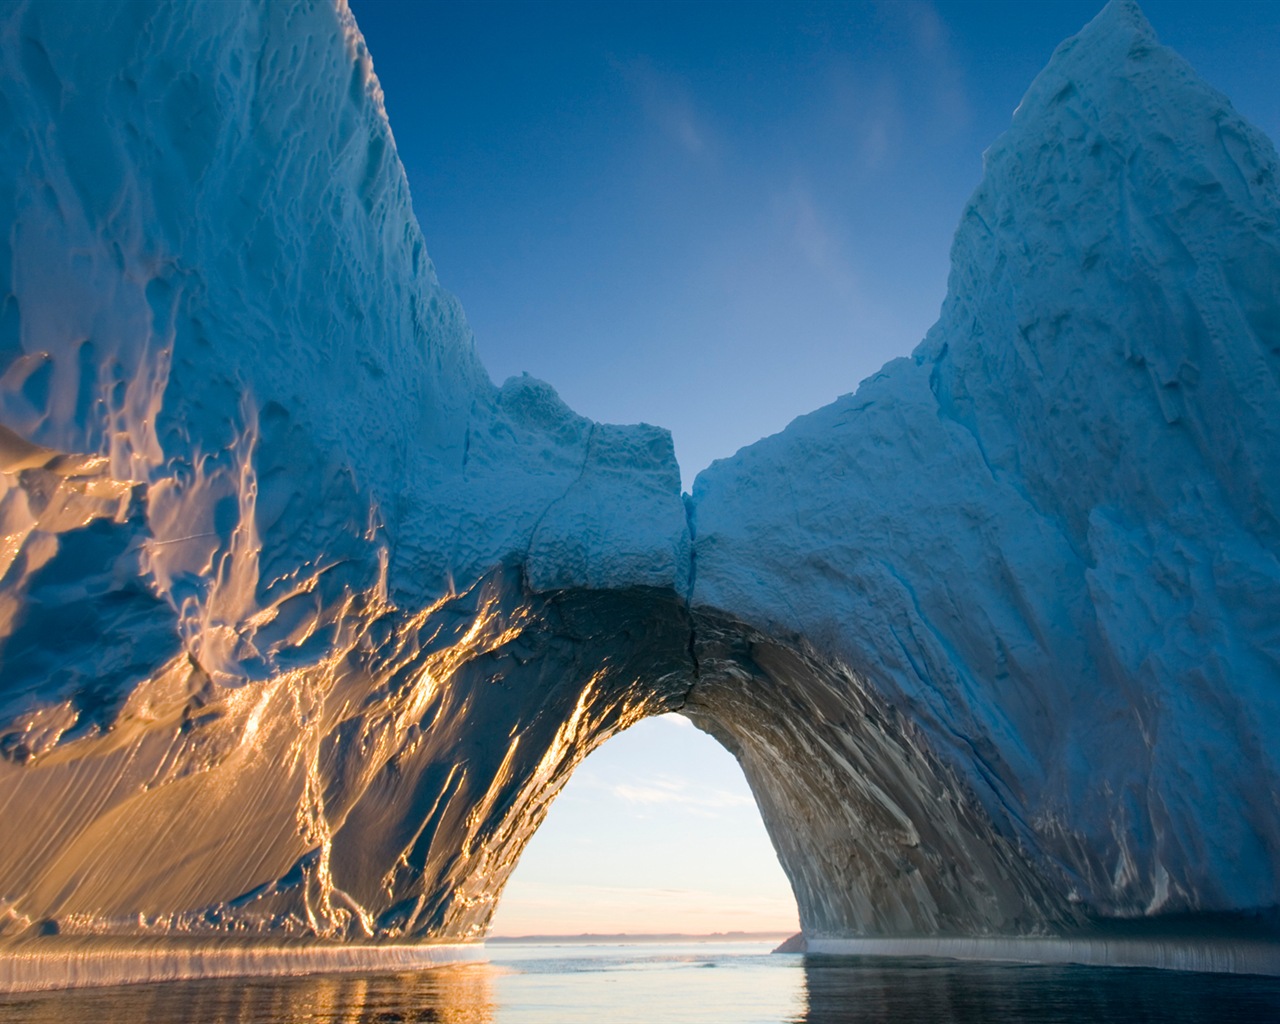 Windows 8: Fondos del Ártico, el paisaje ecológico, ártico animales #3 - 1280x1024